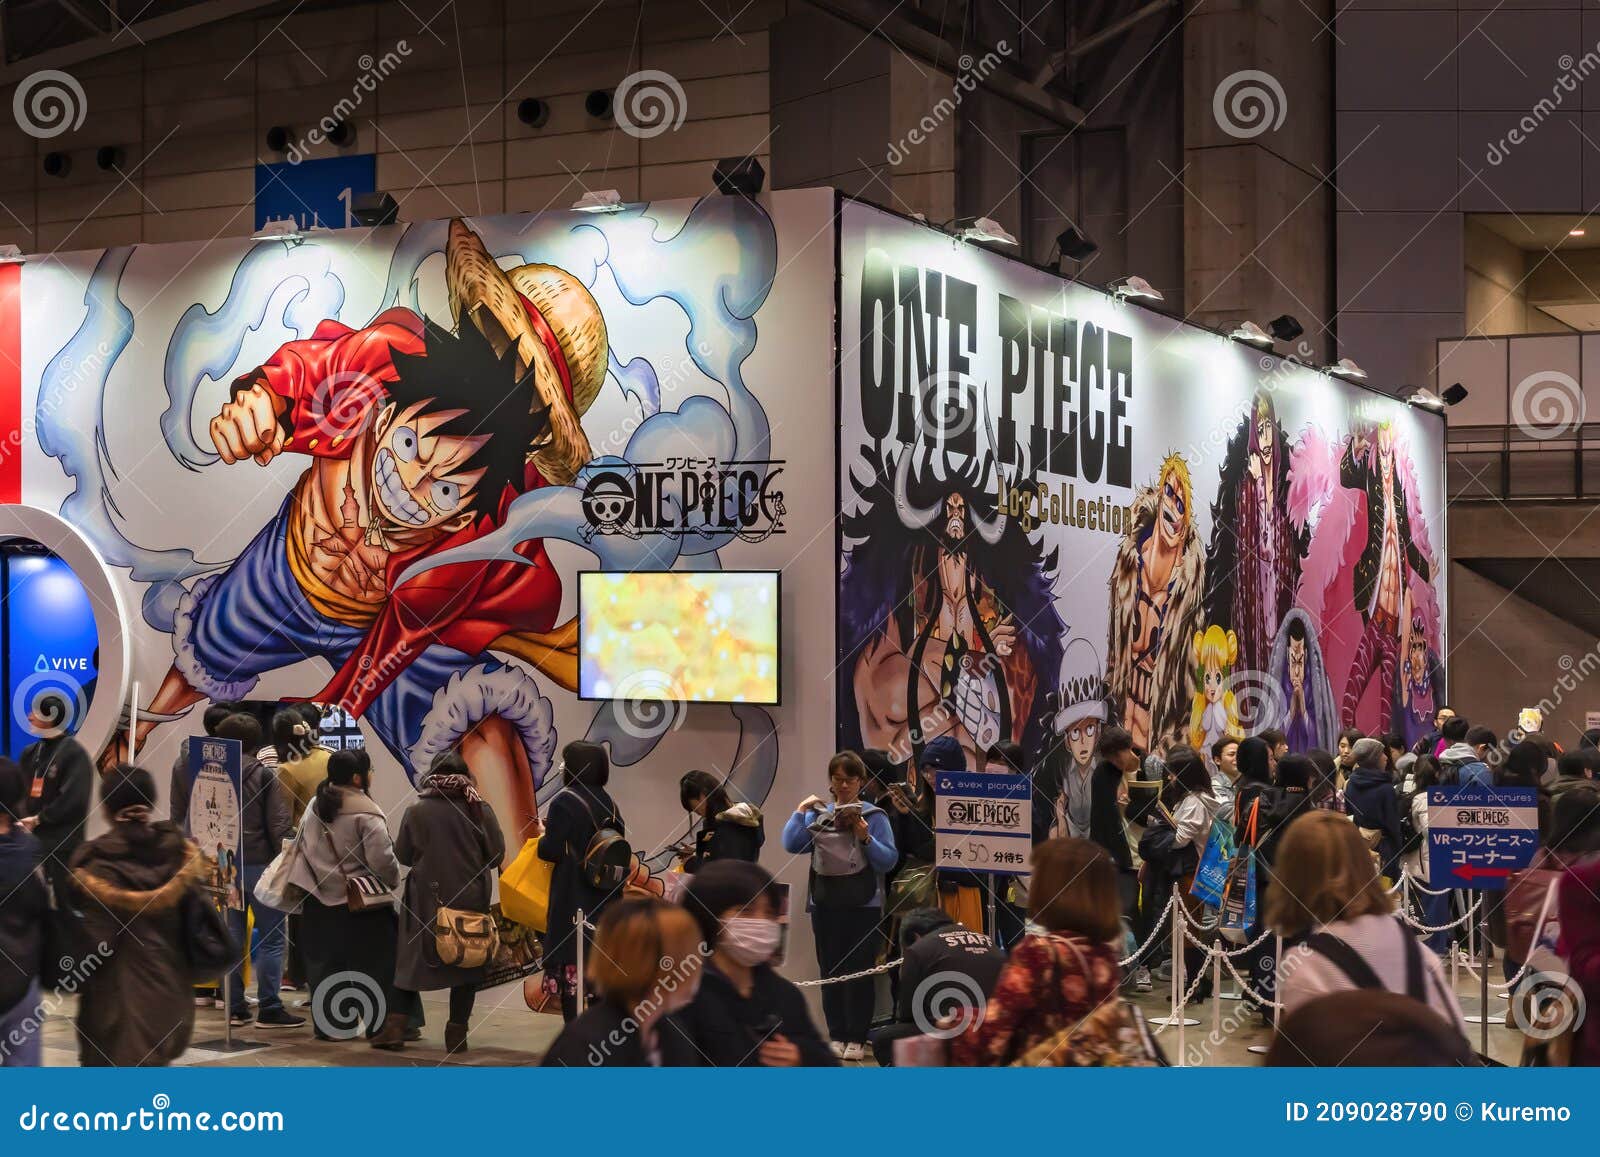 Anime Expo 2019 PostShow Field Report